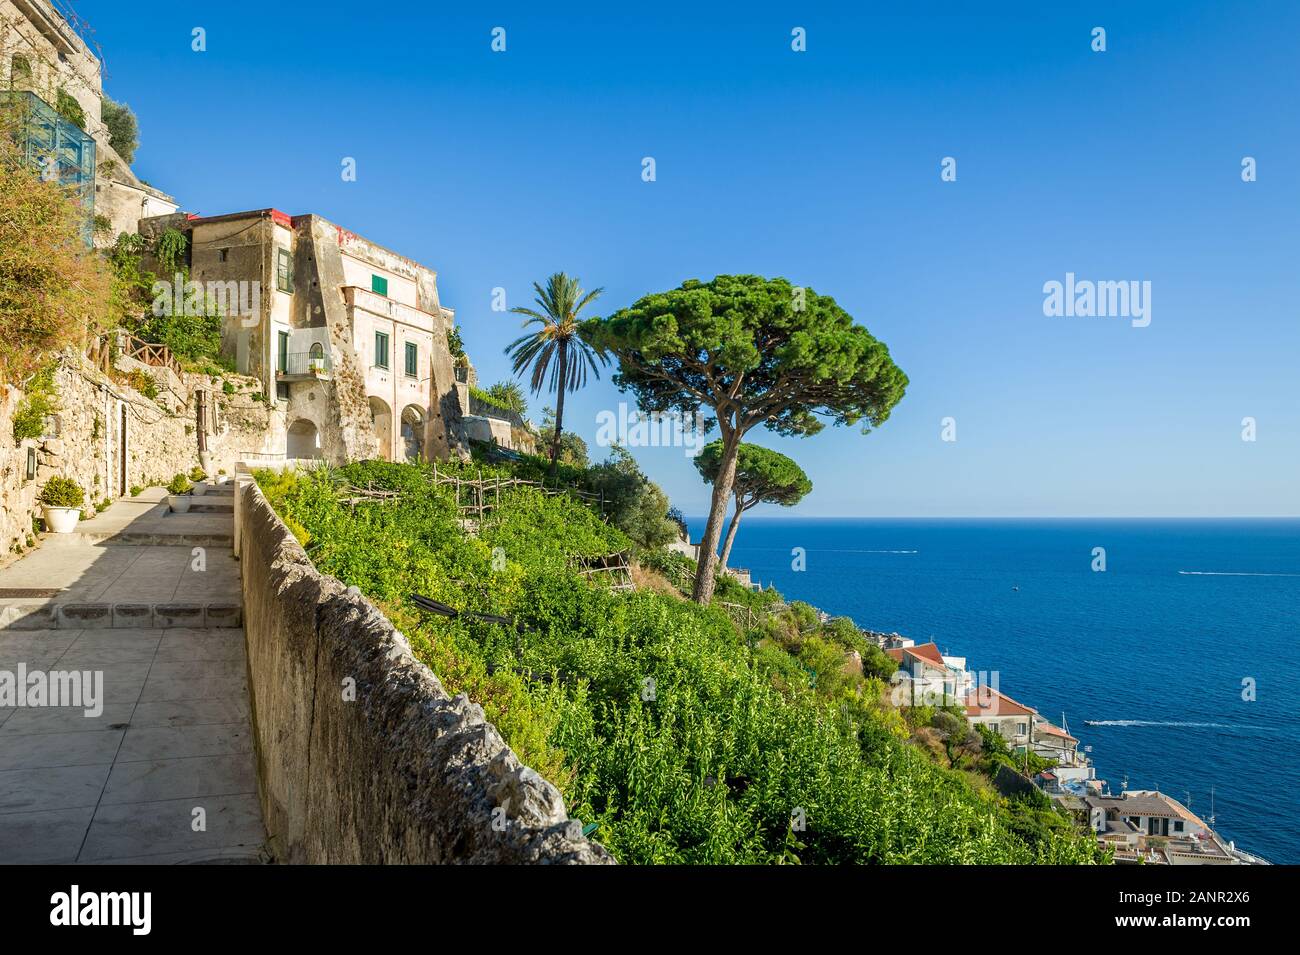 Old Street en las colinas de la ciudad de Amalfi. Vías peatonales bove el casco antiguo de la ciudad. La costa de Amalfi, Italia. Foto de stock